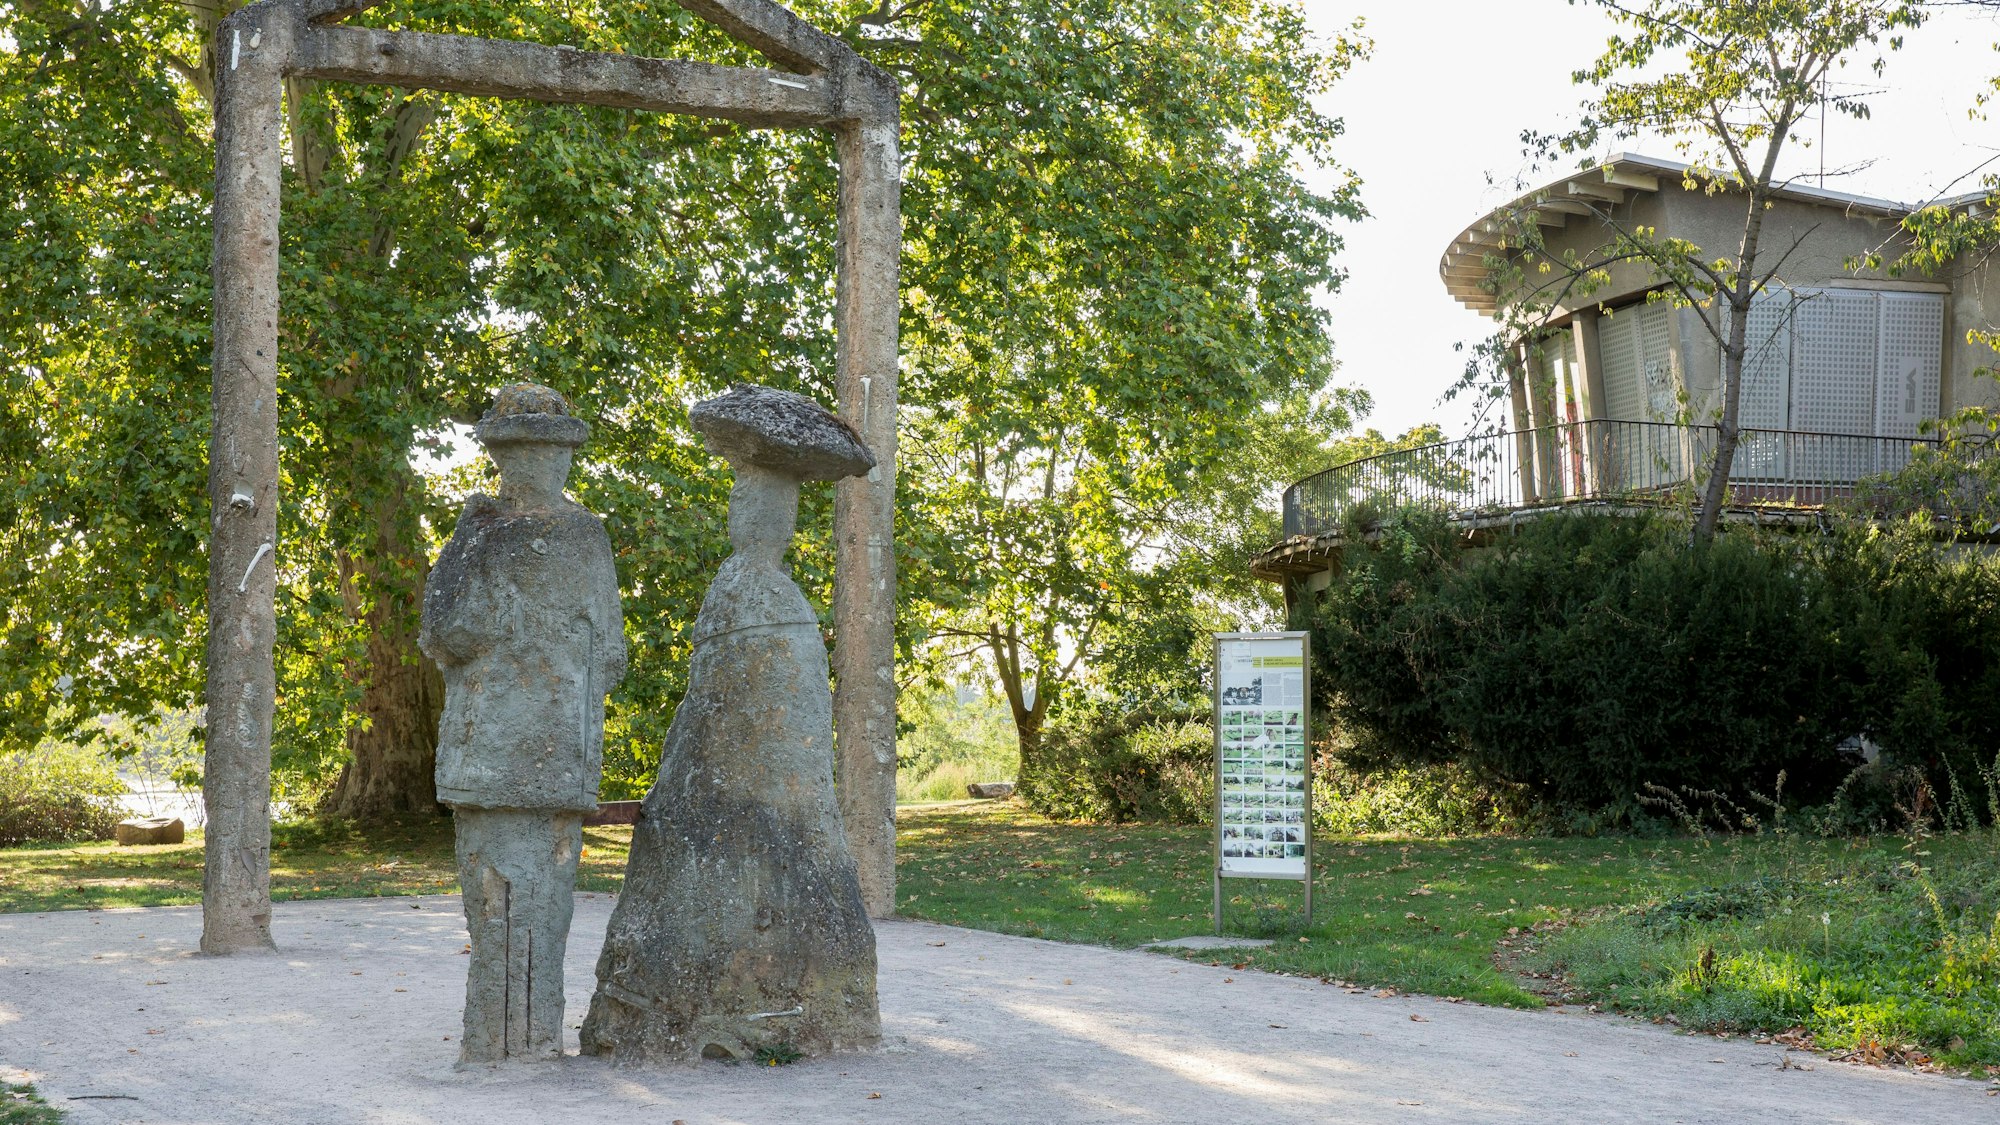 zwei Skulpturen aus Stein stehen auf einem Weg